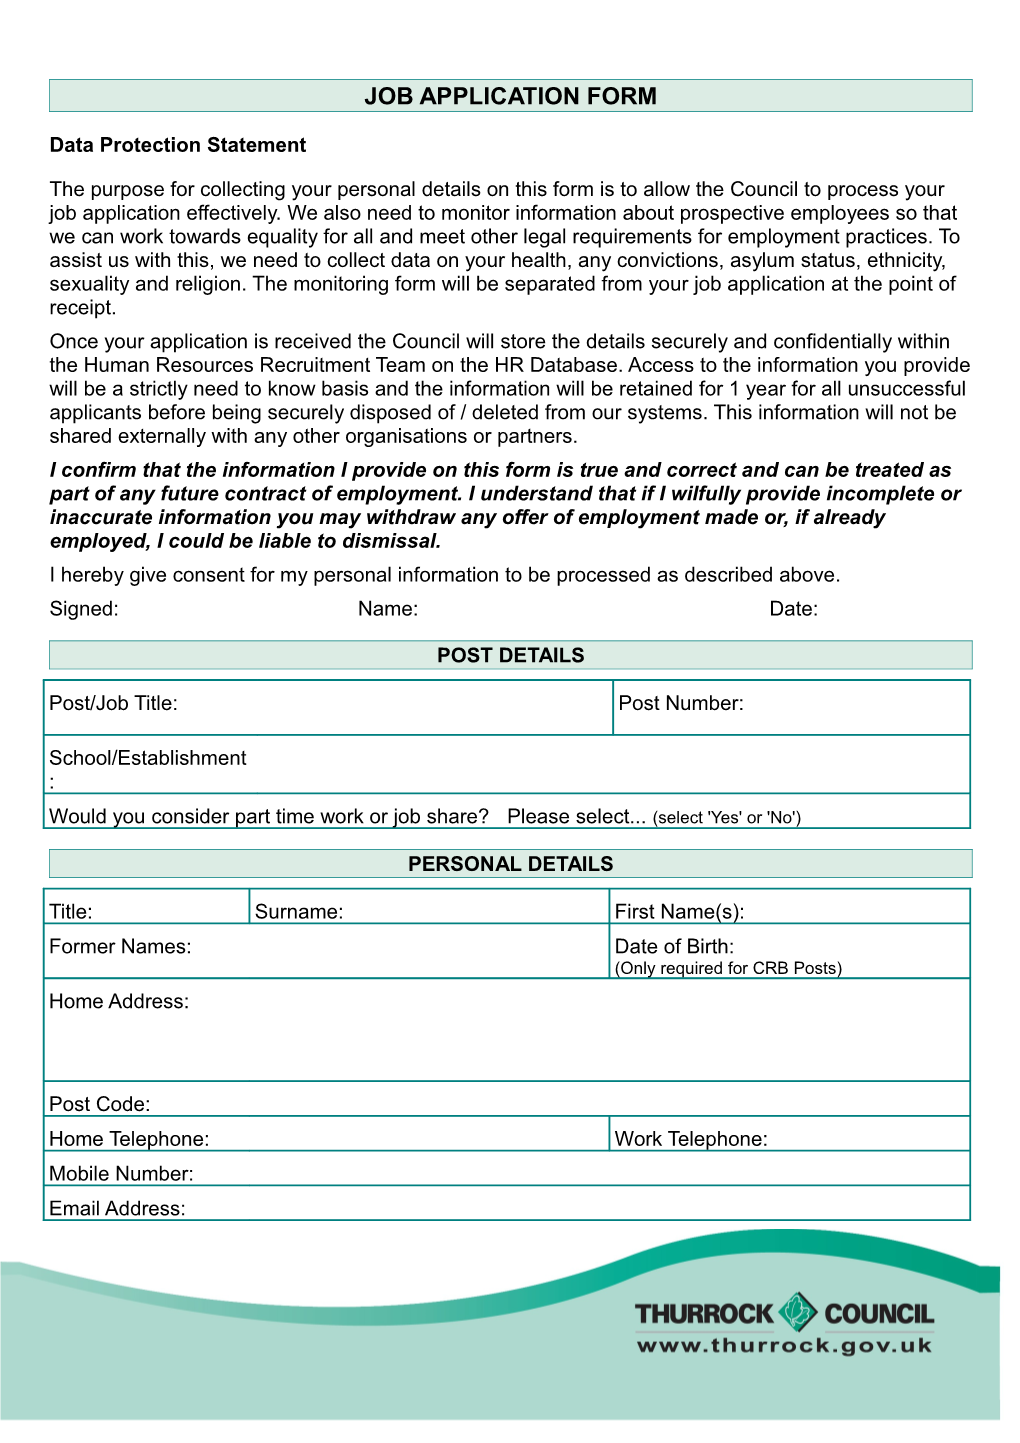 Thurrock Council Job Application Form